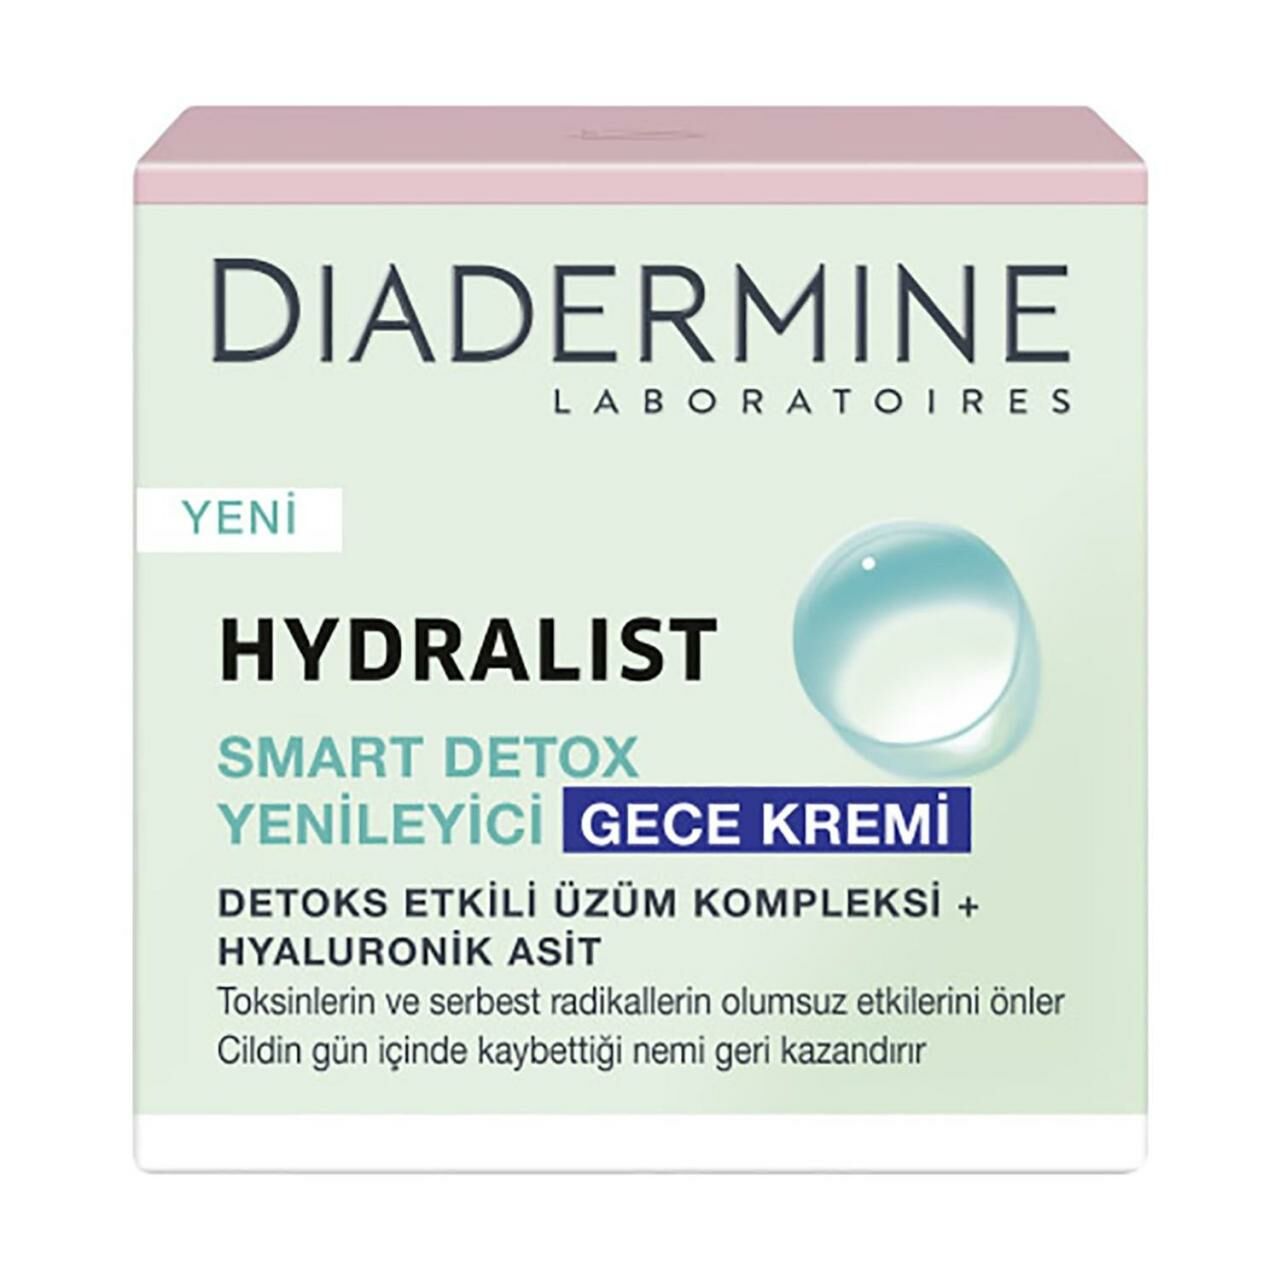 Diadermine Hydralist Smart Detox Yenileyici Gece Kremi 50 Ml